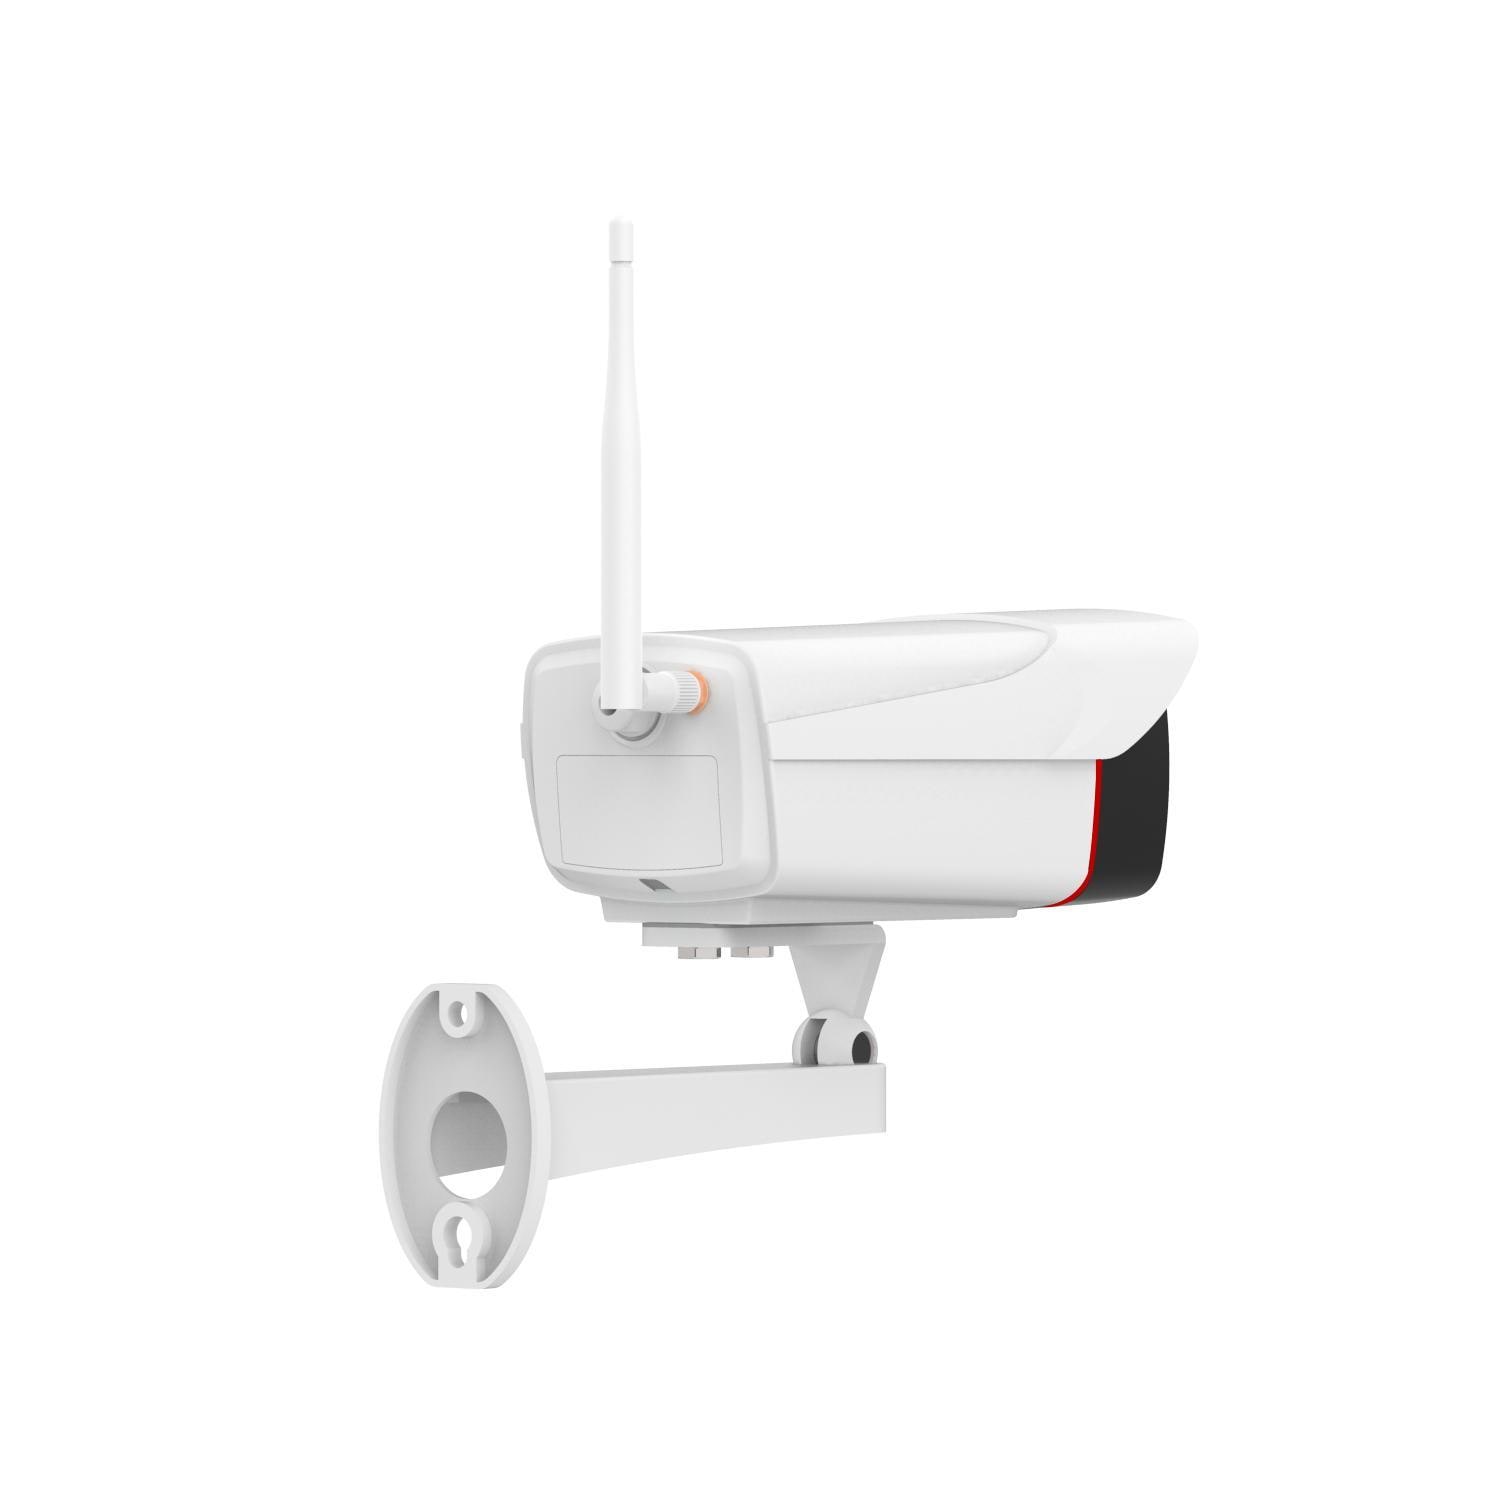 Overvågningskamera IR-lamper til udendørs brug Hvid | Elgiganten